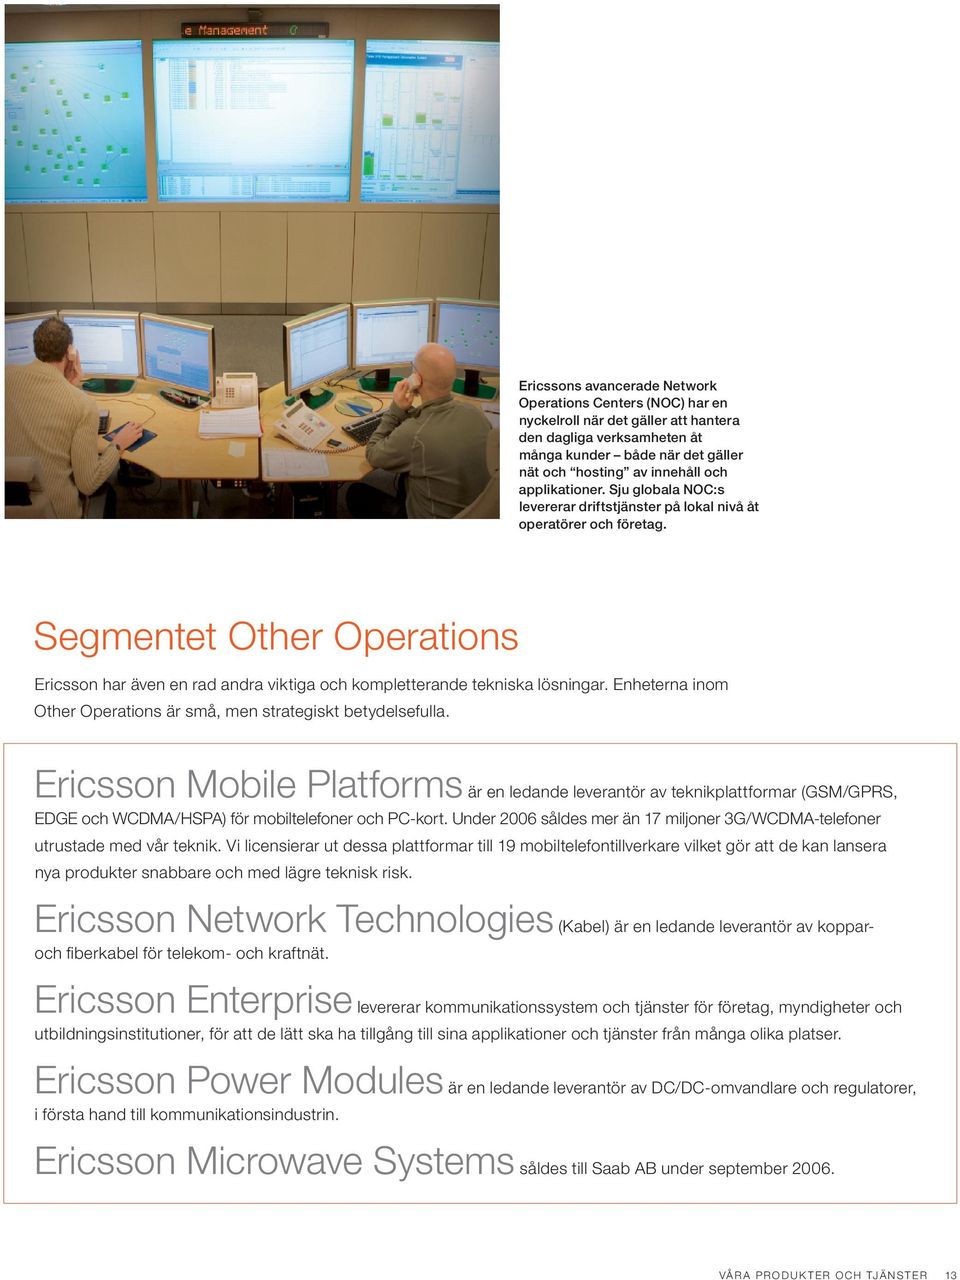 Segmentet Other Operations Ericsson har även en rad andra viktiga och kompletterande tekniska lösningar. Enheterna inom Other Operations är små, men strategiskt betydelsefulla.